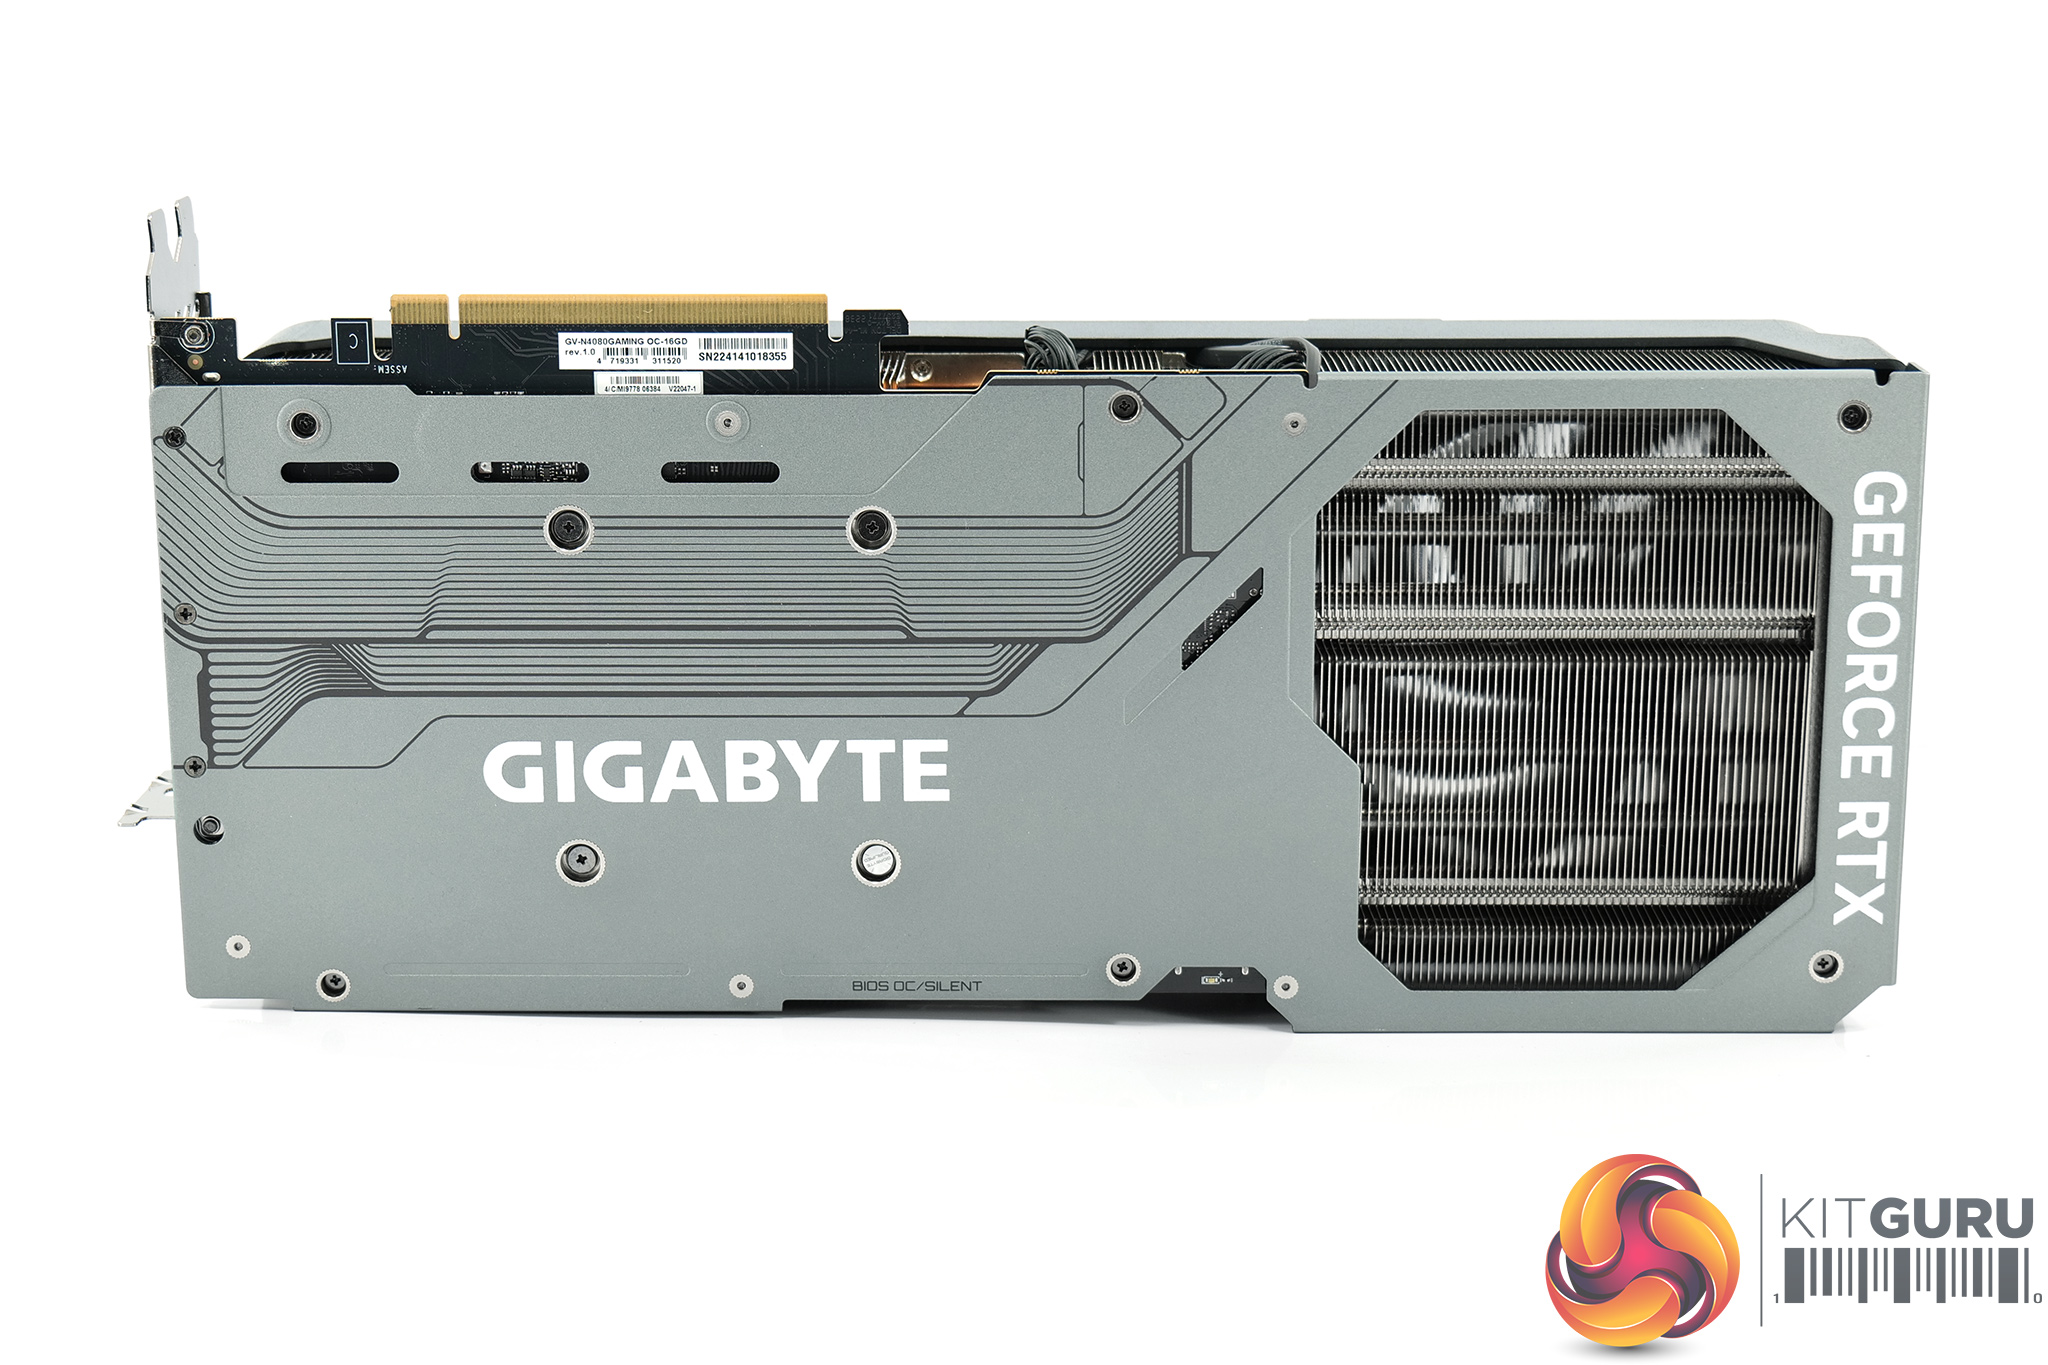 Gigabyte RTX 4080 Gaming OC Review